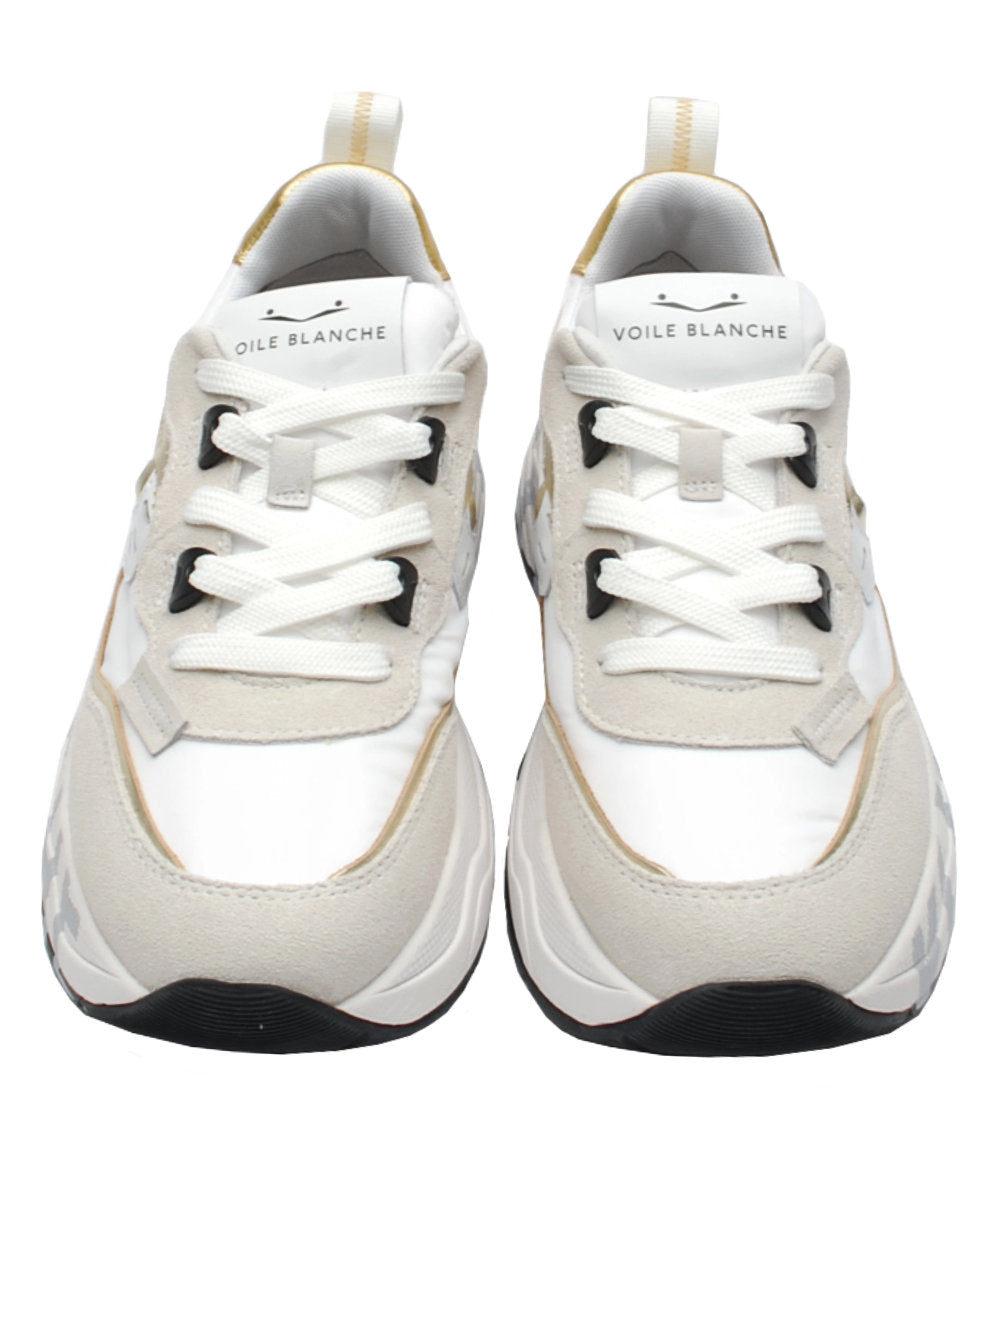 Voile blanche sneaker club105 7475 bianco platino pe24